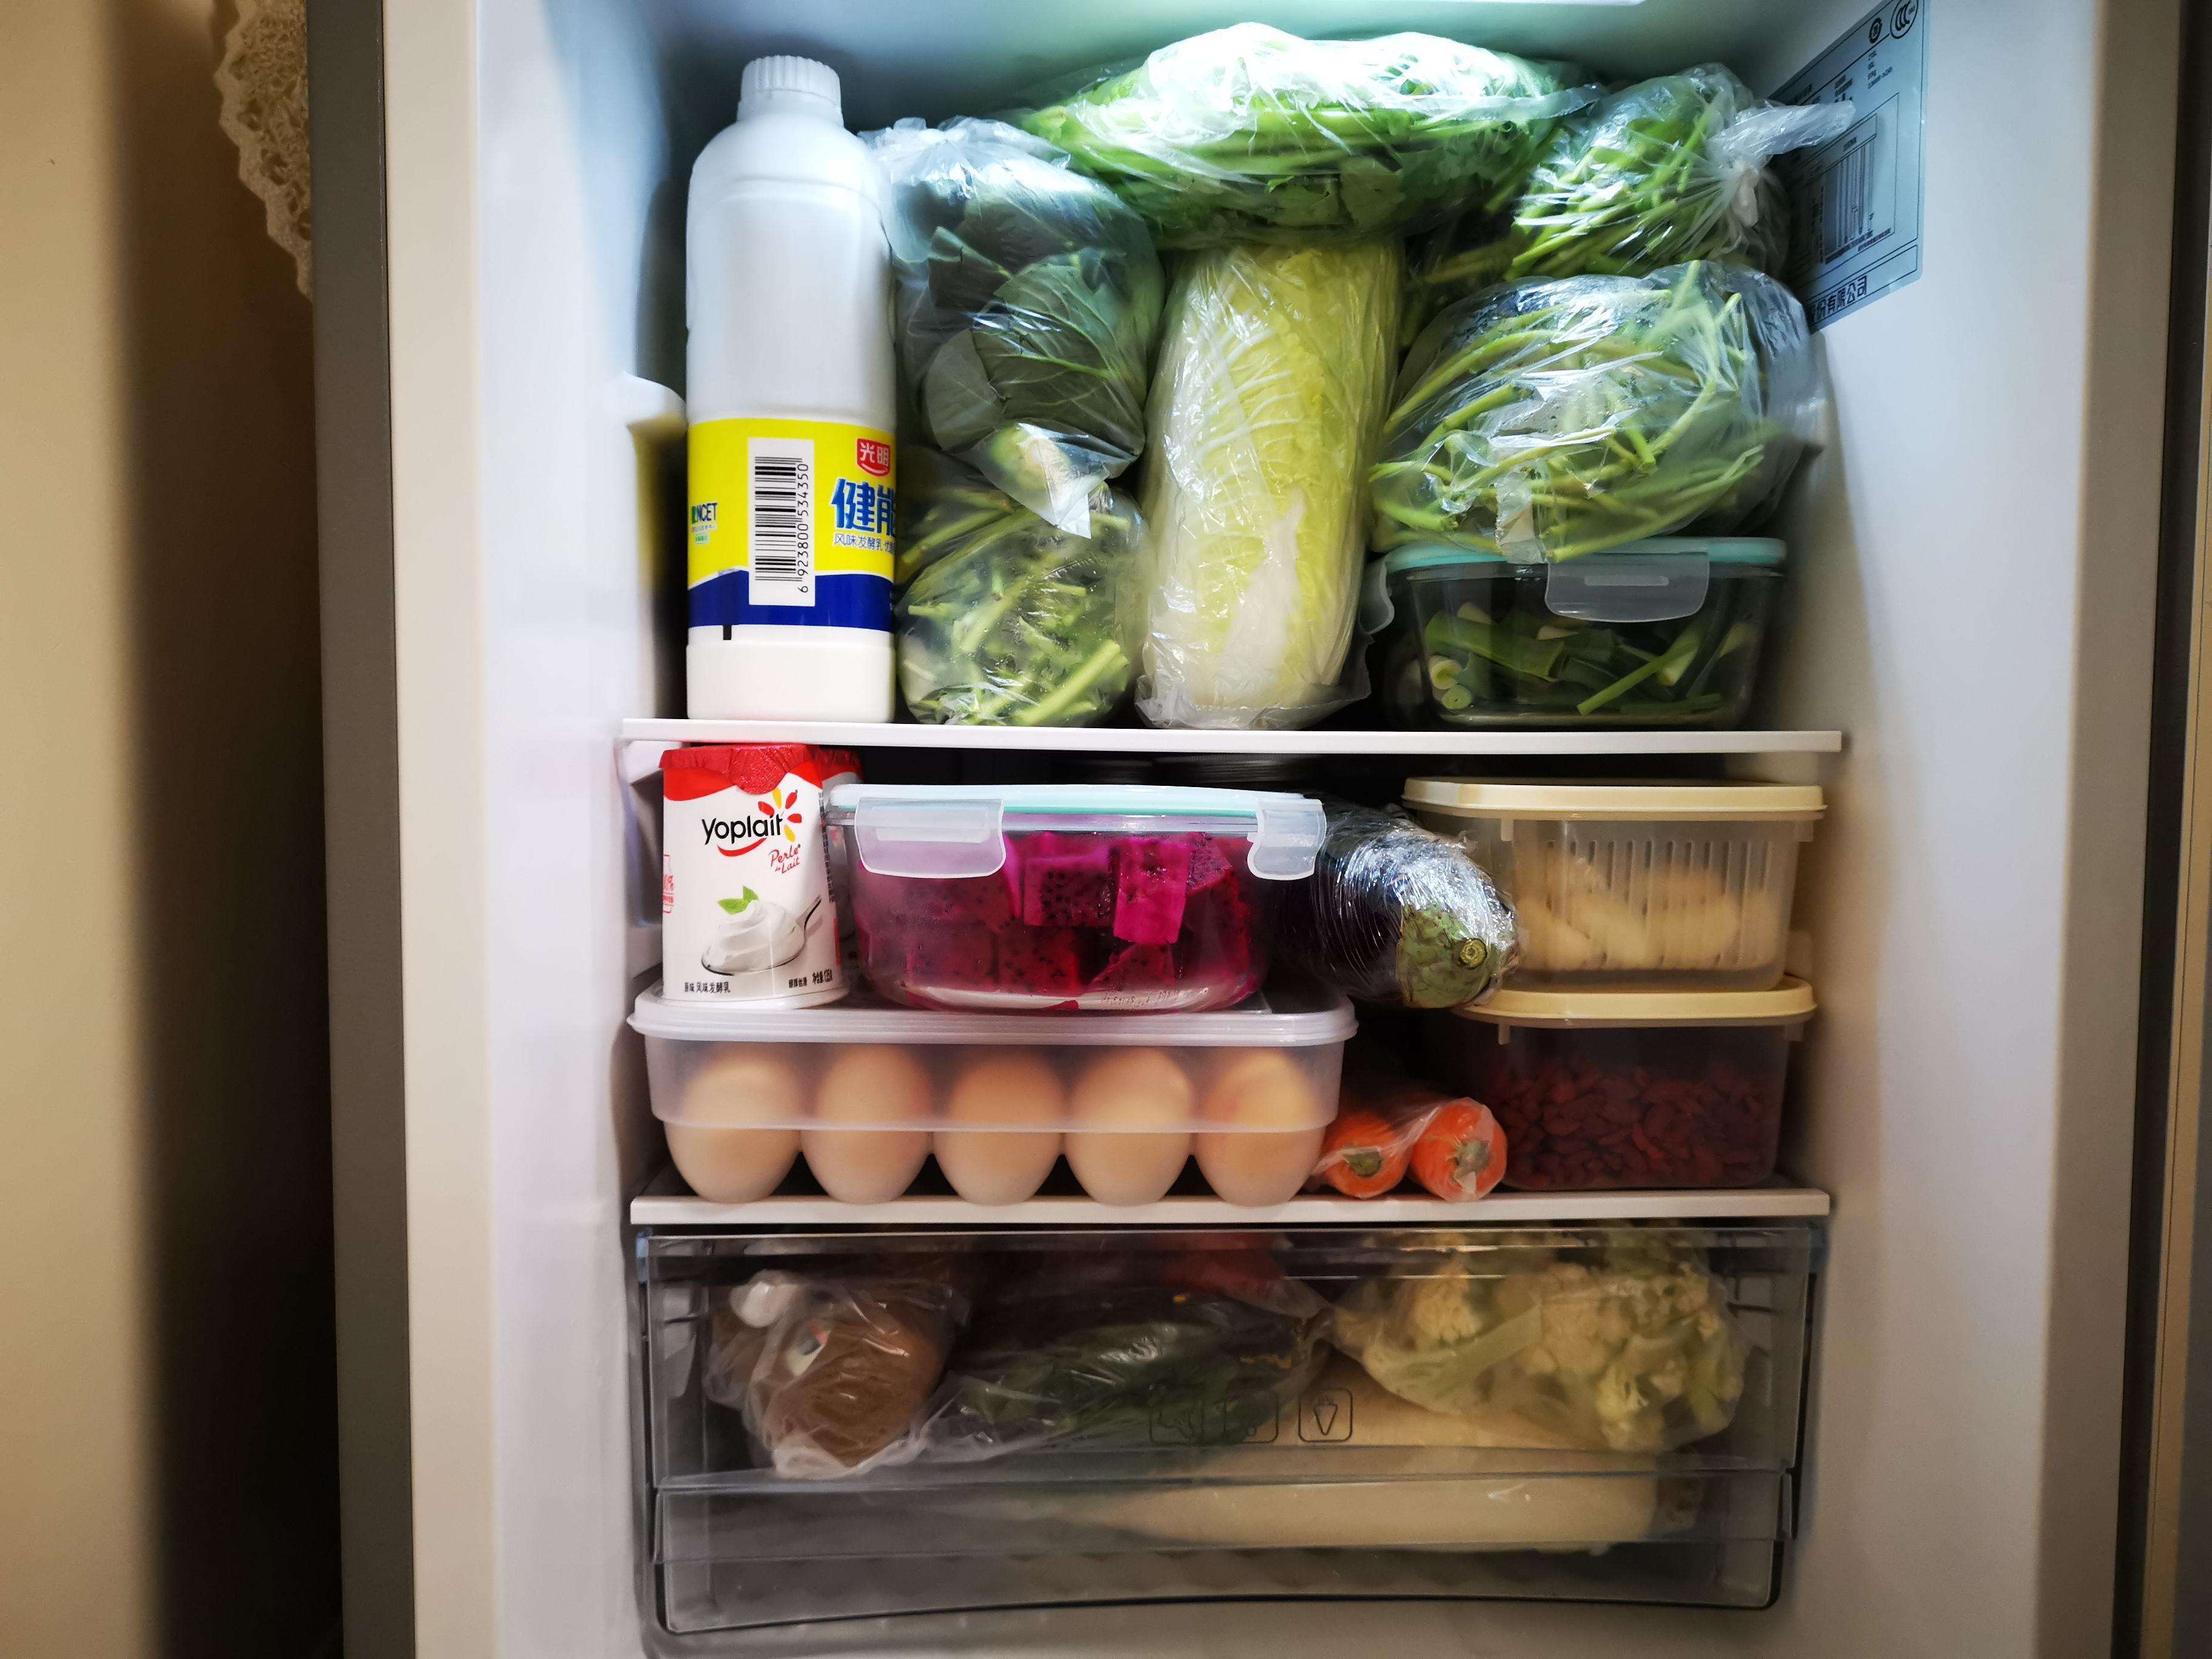 无论是在25 ℃的室温下保存,还是5 ℃的冰箱冷藏保存,蔬菜中亚硝酸盐